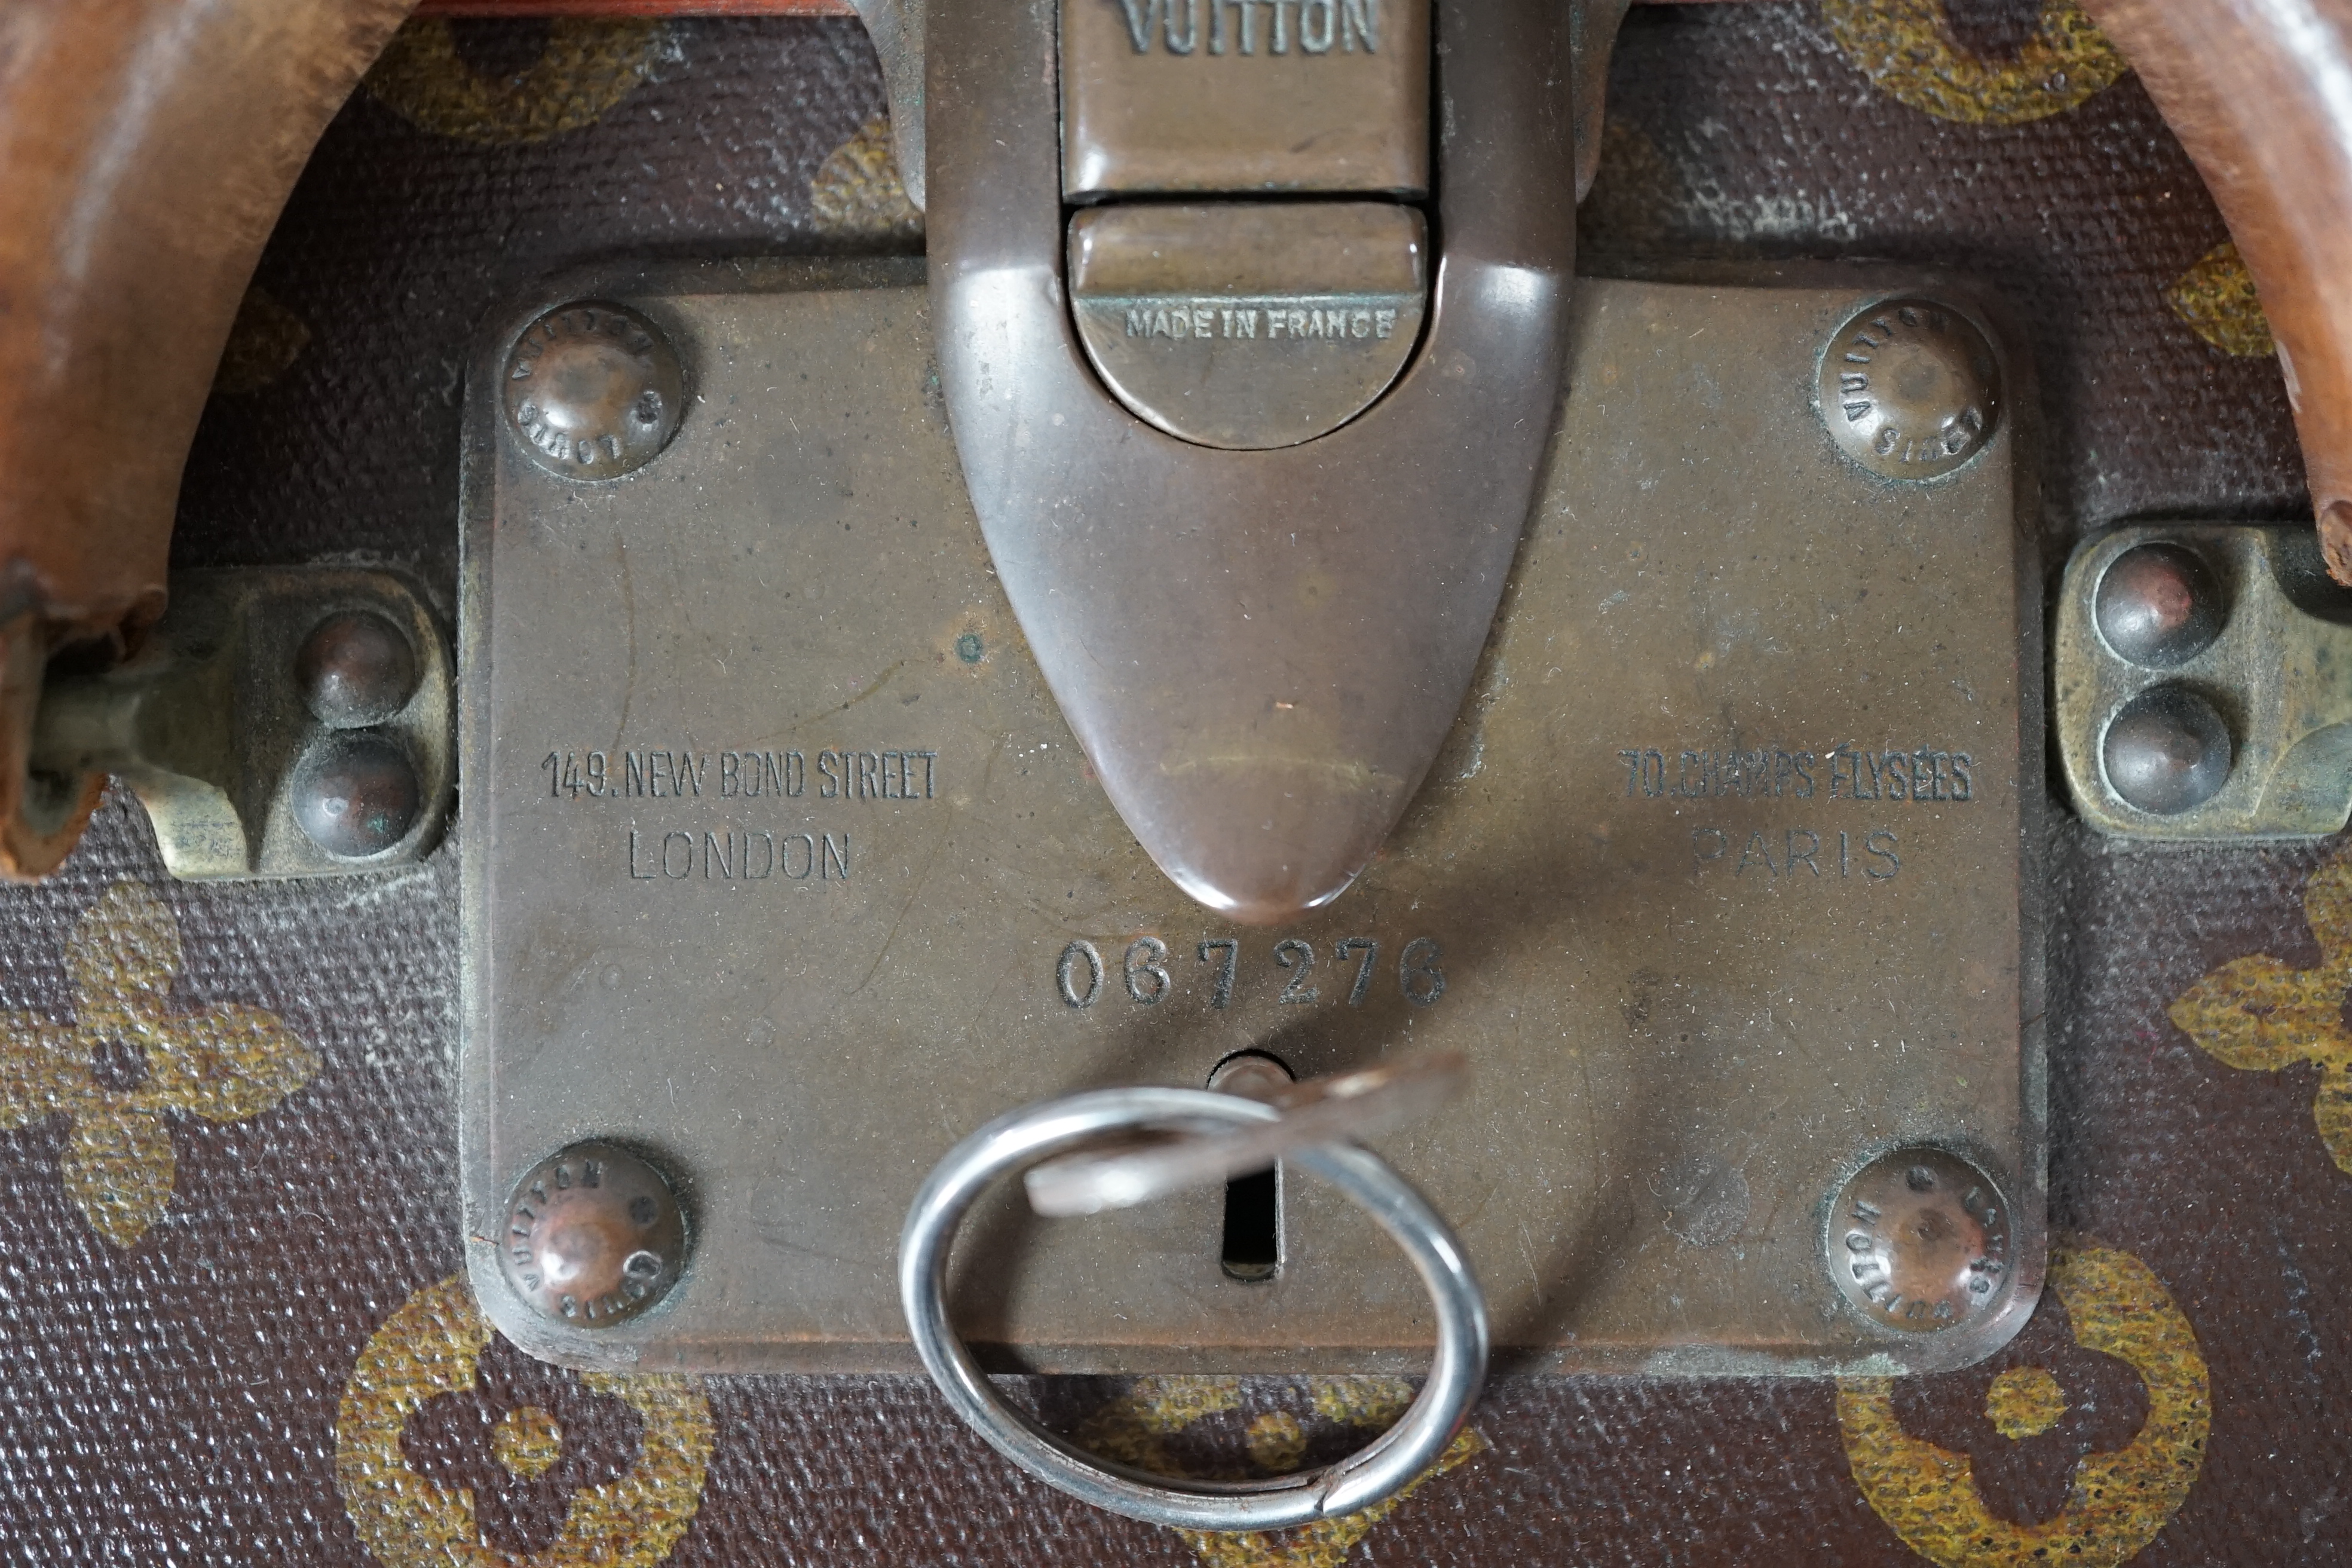 A vintage Louis Vuitton monogram canvas suitcase, 71cm x 44cm x 22cm